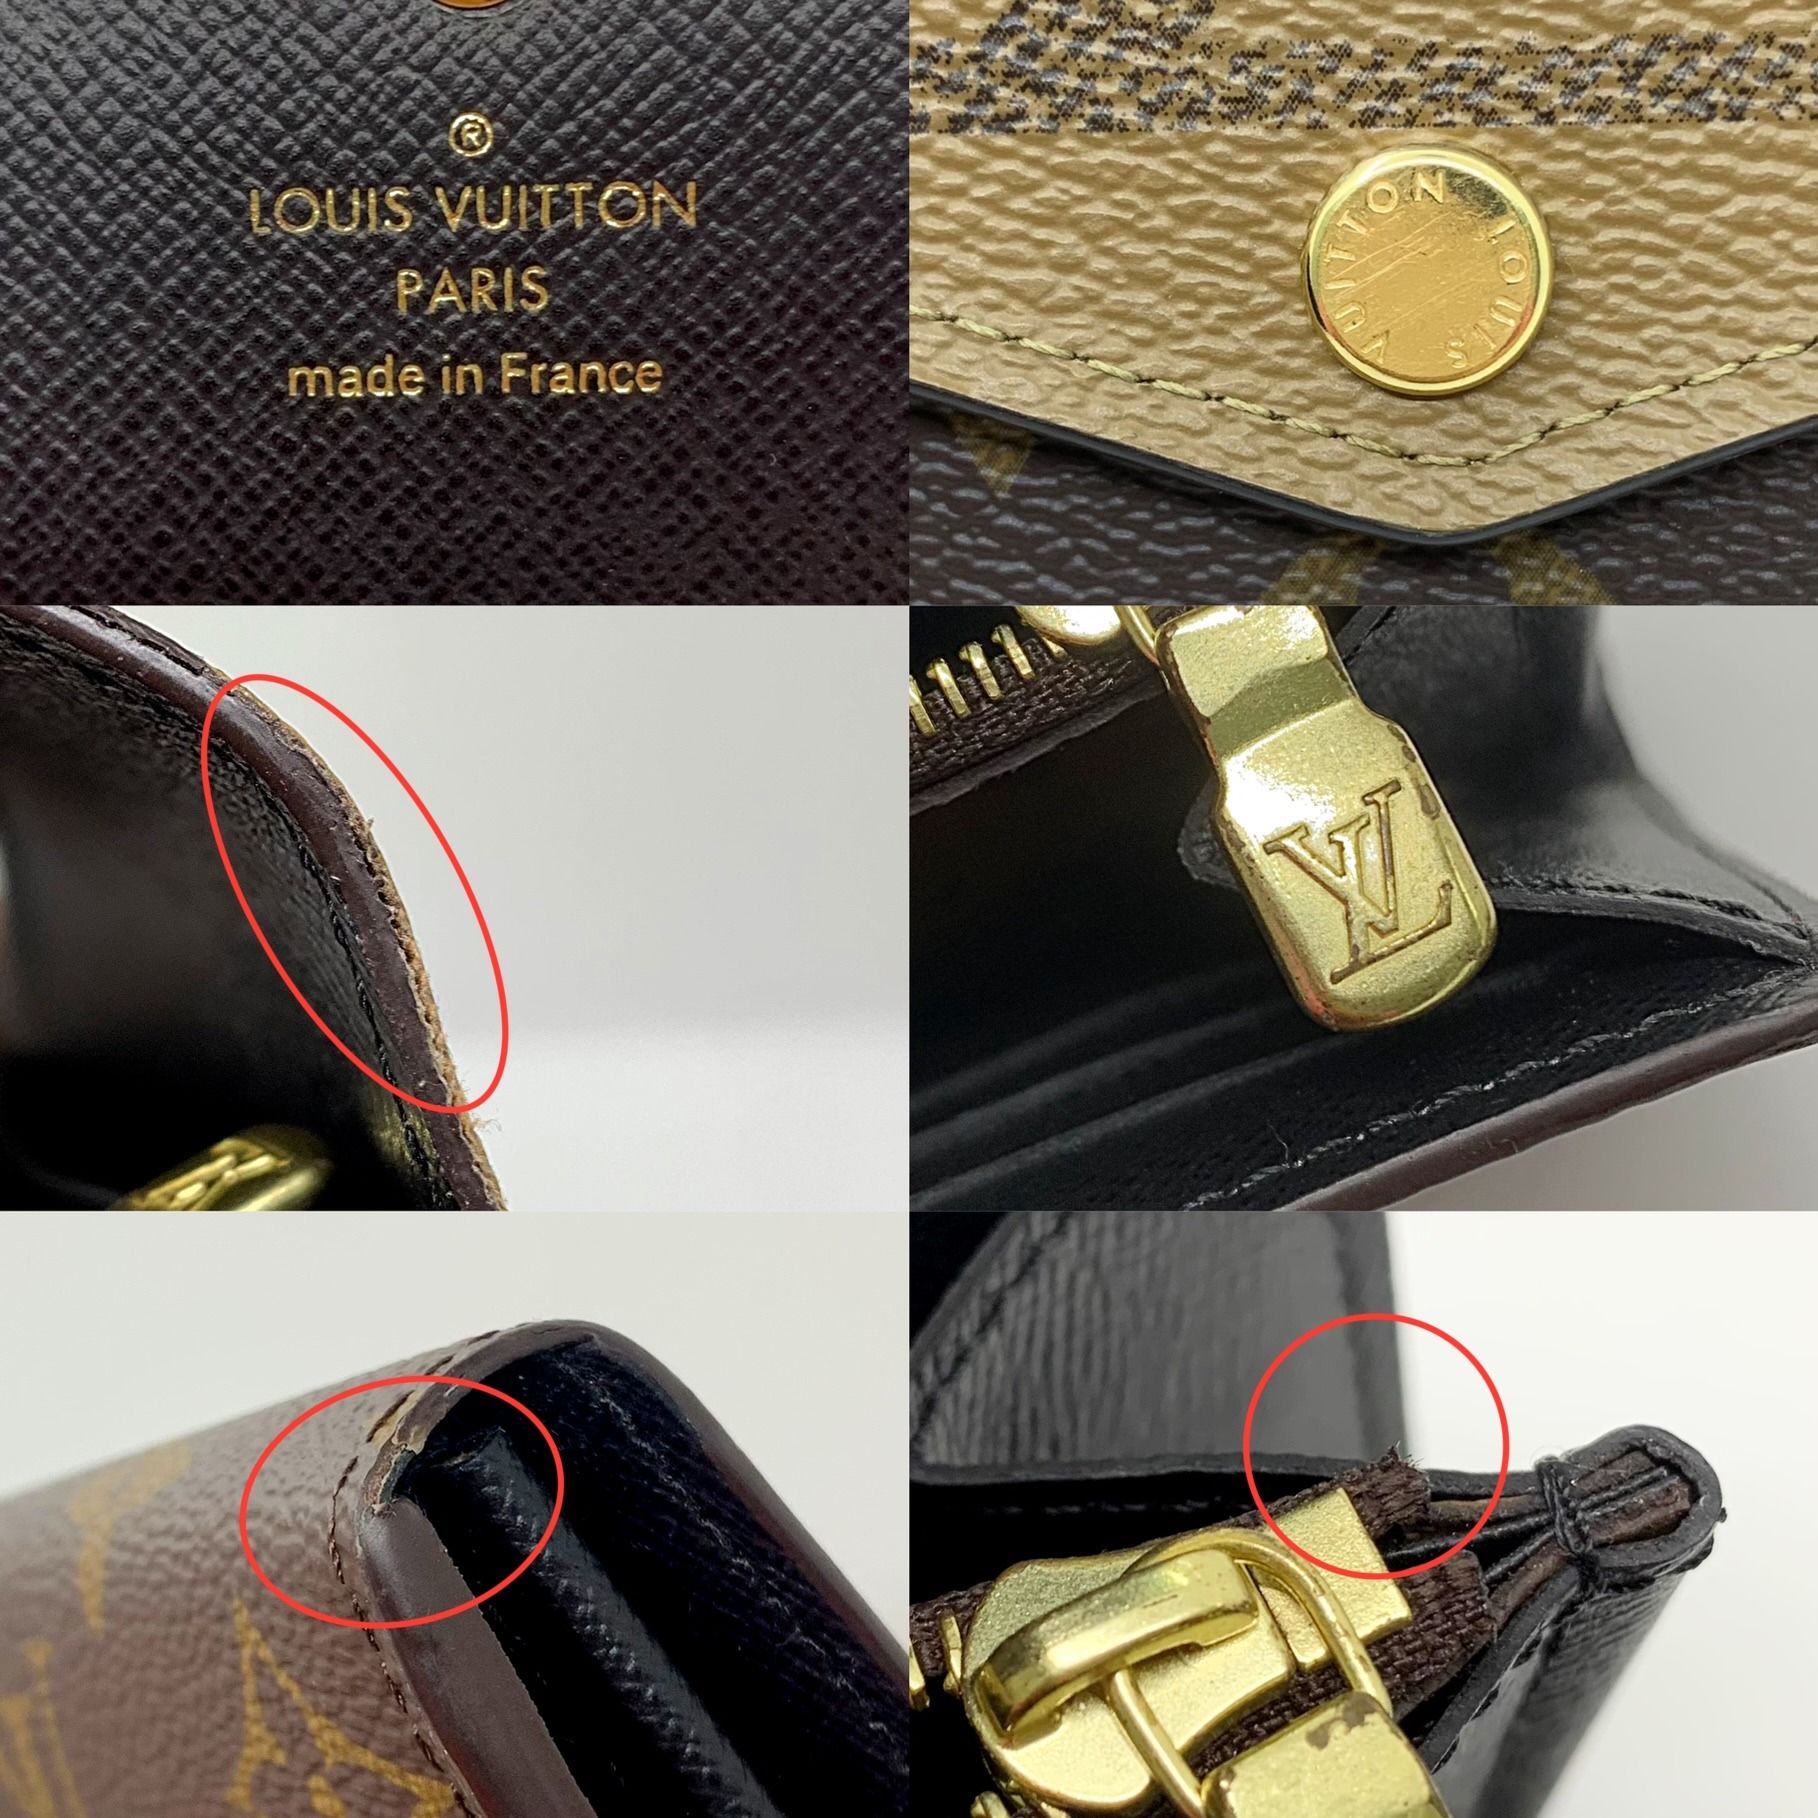 M80726 Louis Vuitton Monogram Reverse Sarah Wallet